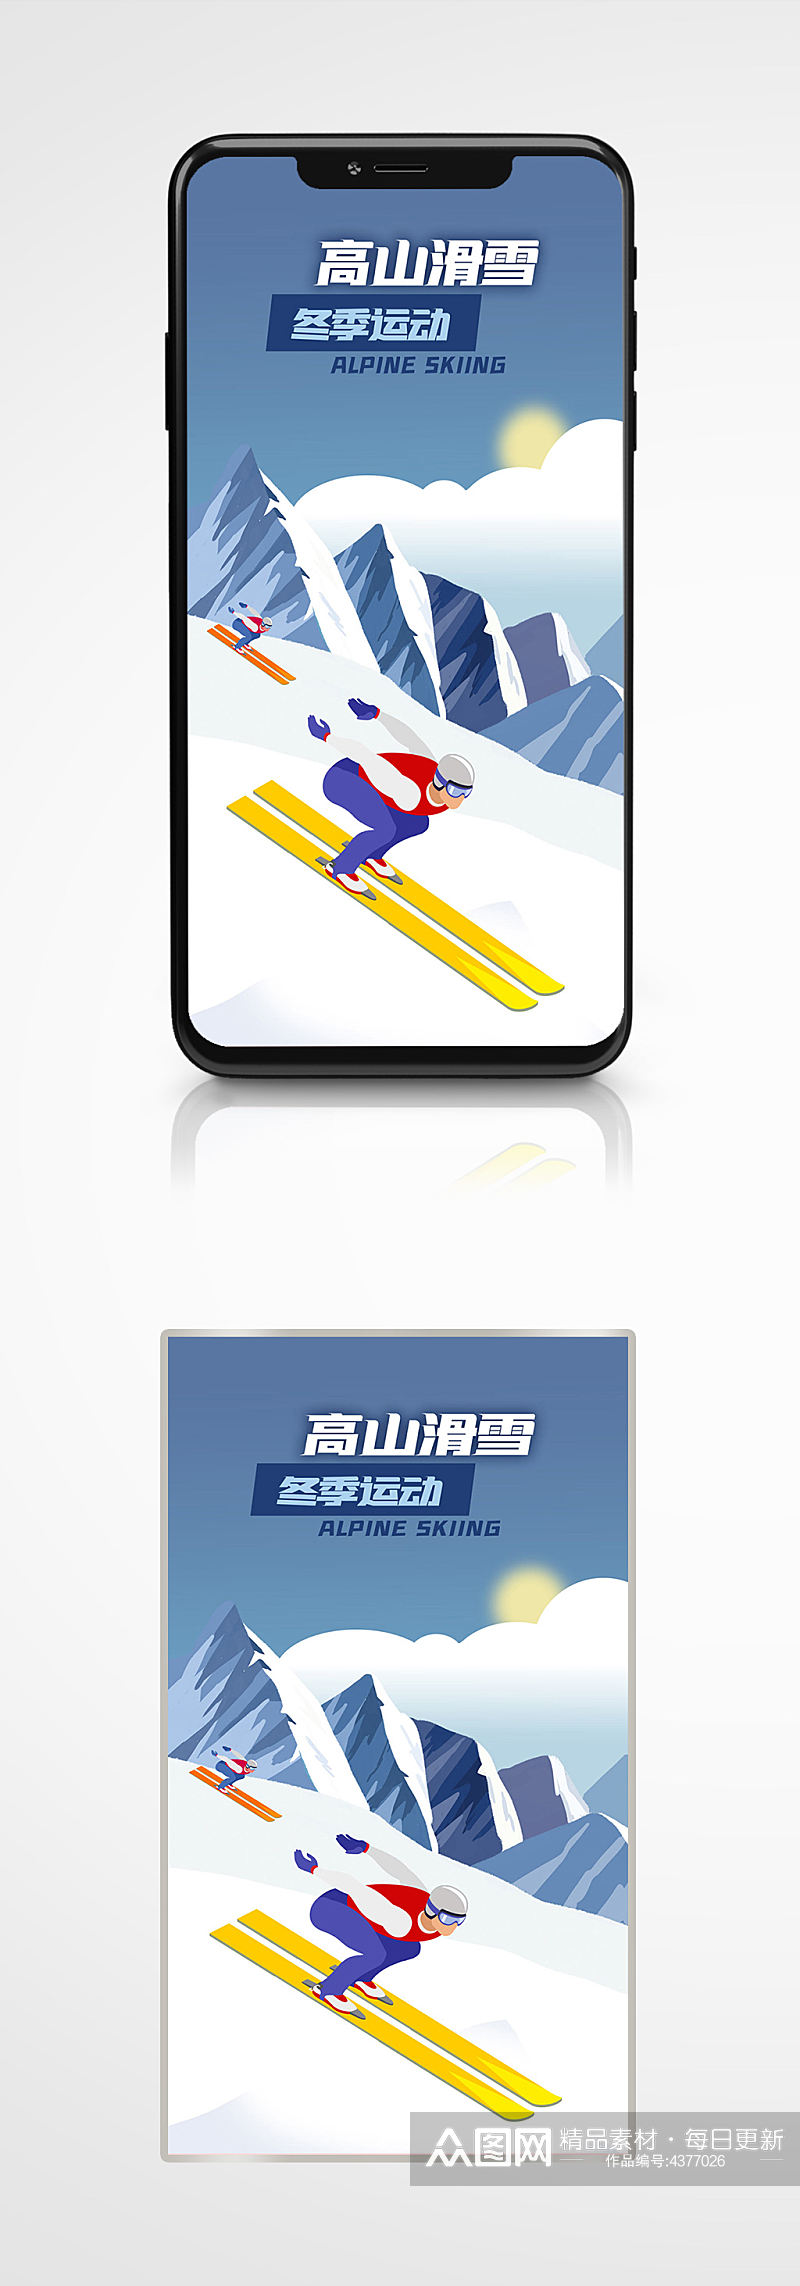 冬季运动体育比赛健身雪山手机海报冬奥会素材